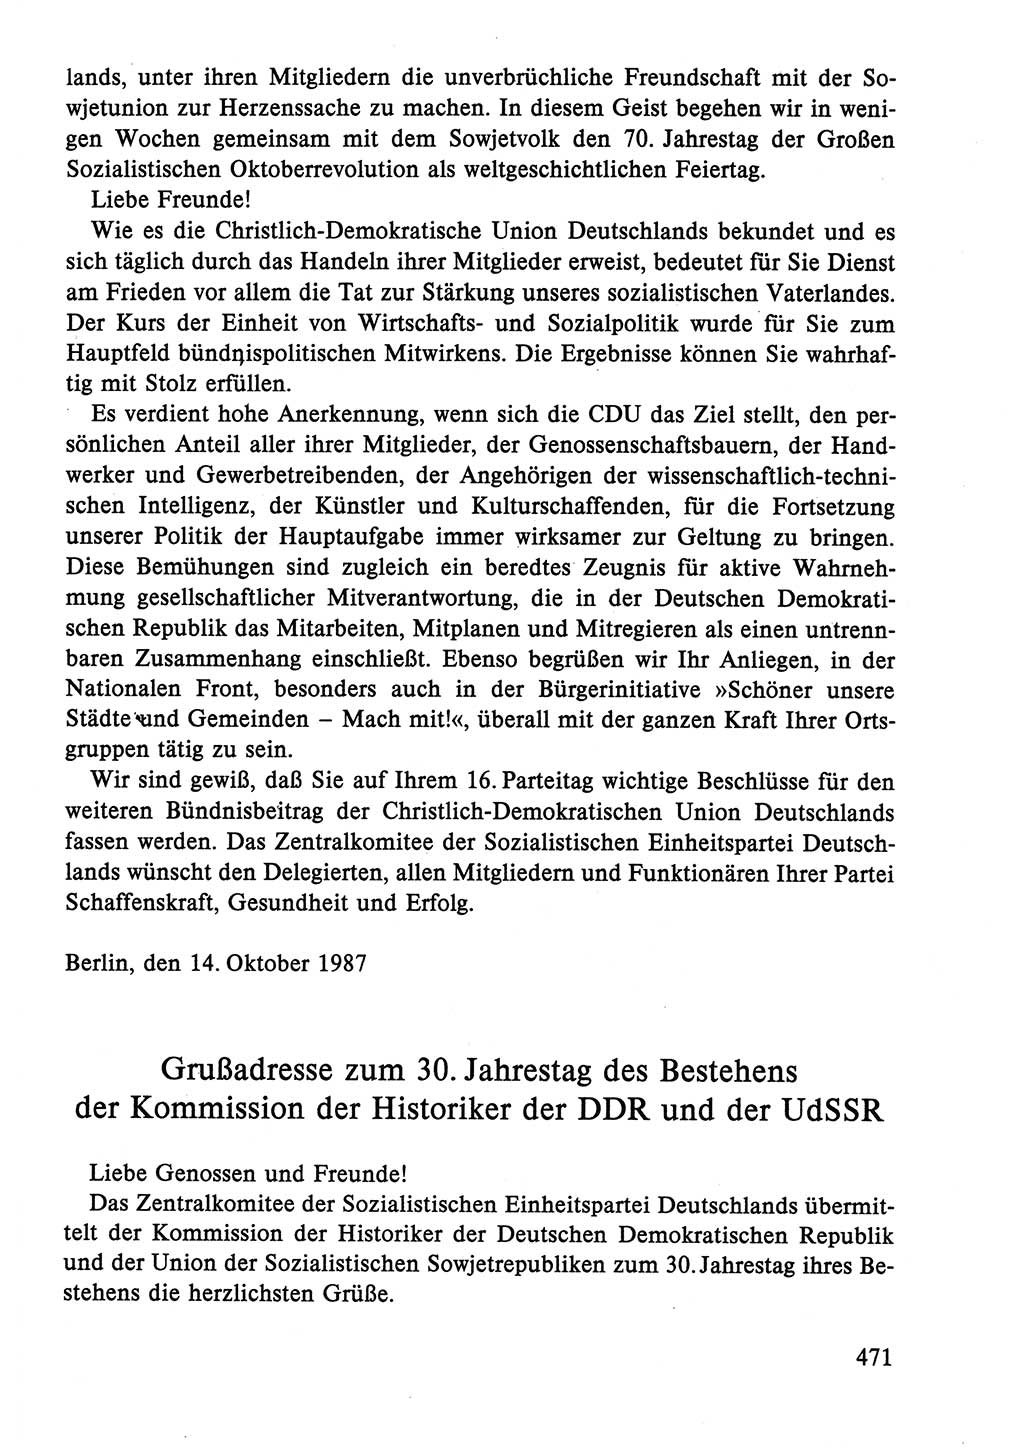 Dokumente der Sozialistischen Einheitspartei Deutschlands (SED) [Deutsche Demokratische Republik (DDR)] 1986-1987, Seite 471 (Dok. SED DDR 1986-1987, S. 471)